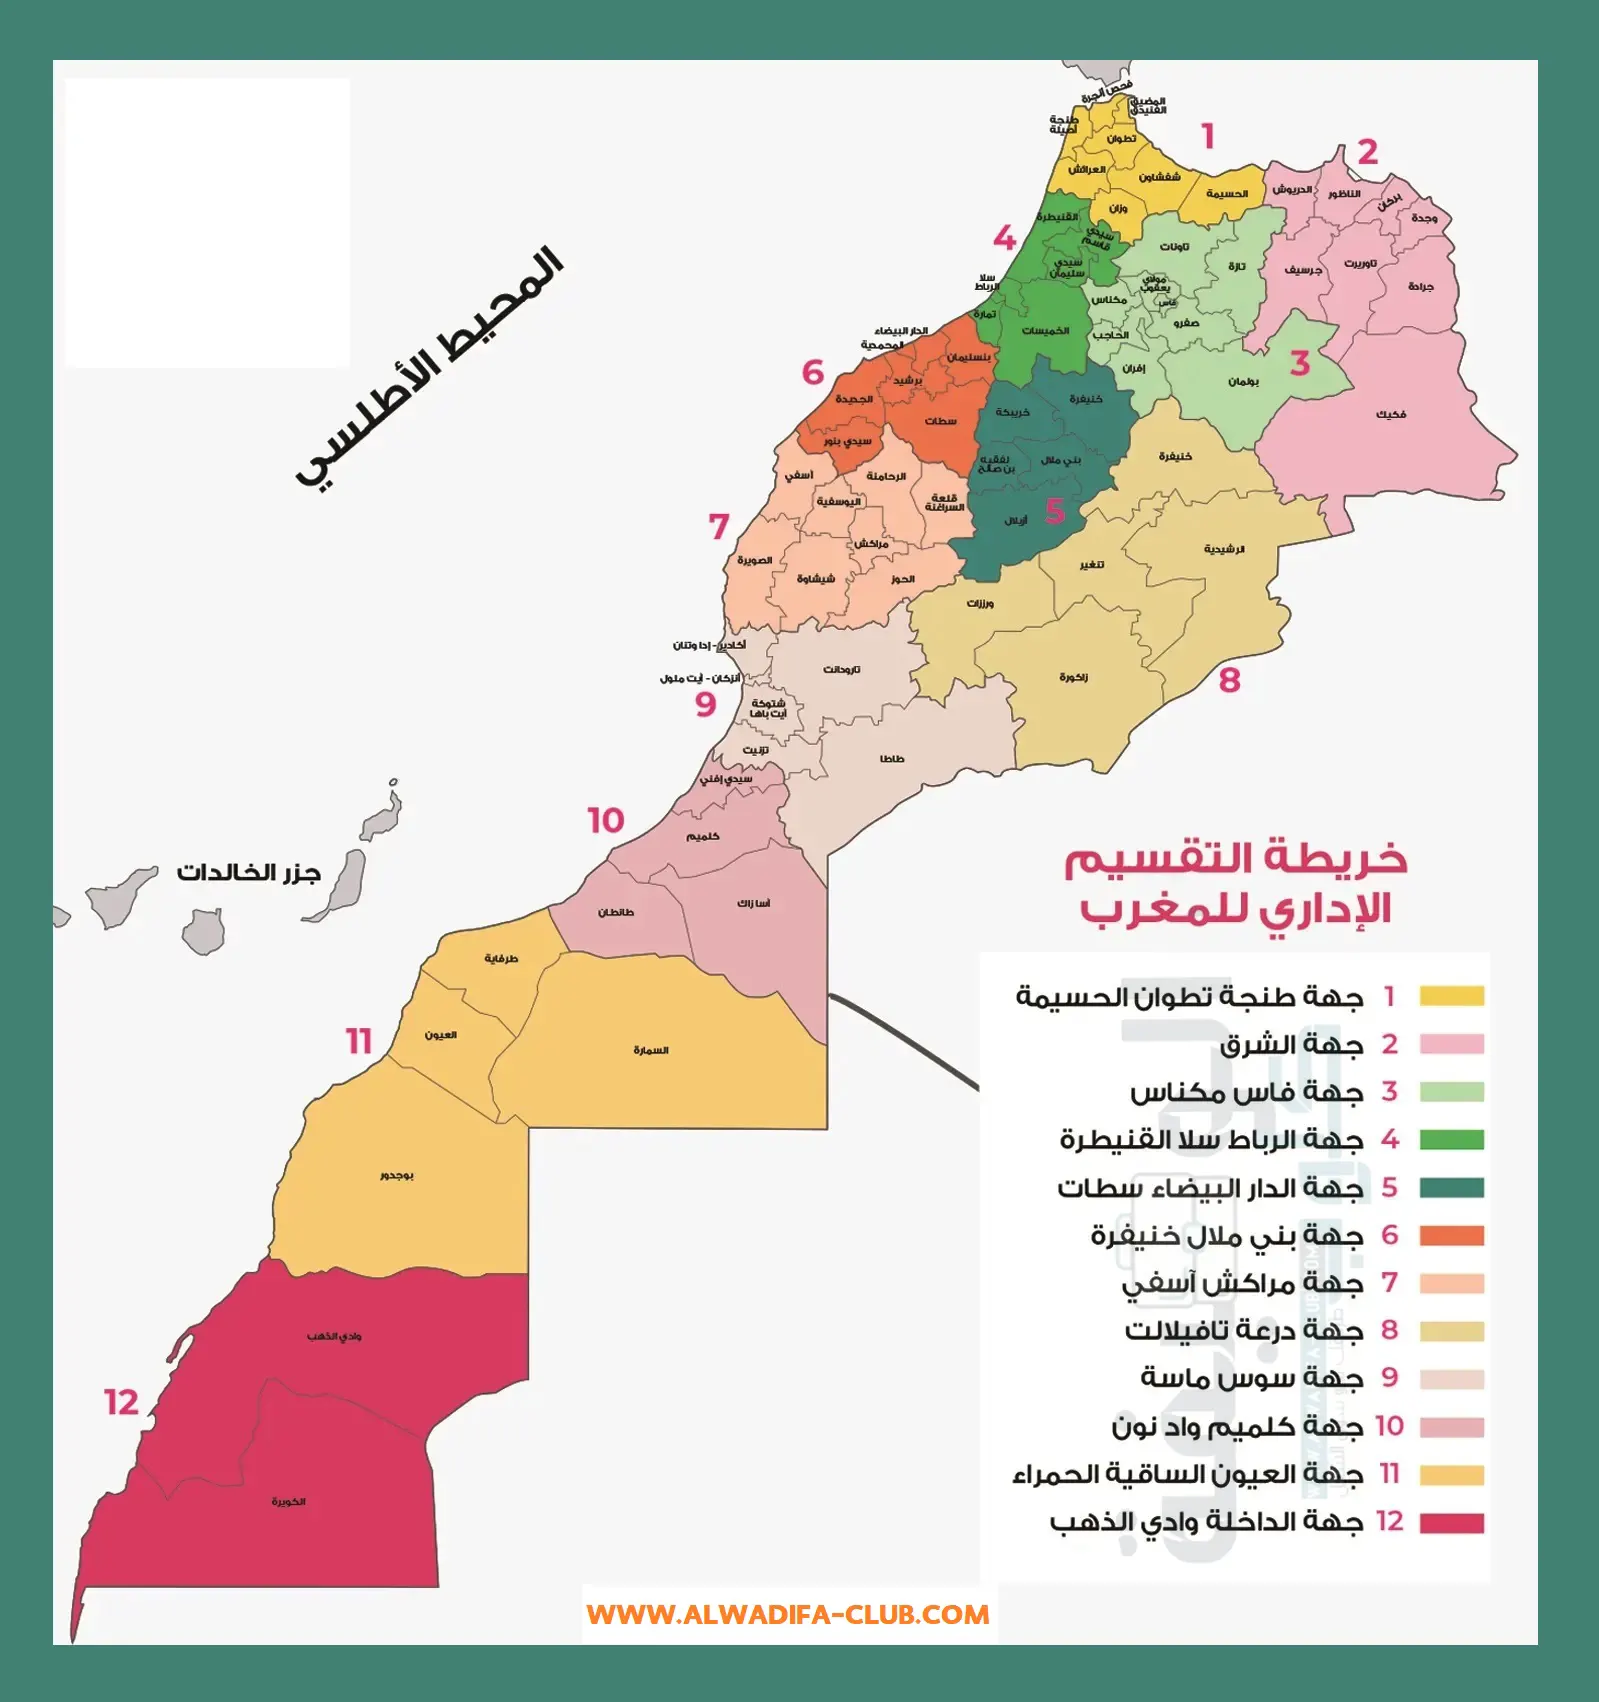 خريطة التقسيم الإداري في المغرب، الجهات، العمالات و الاقاليم 2022